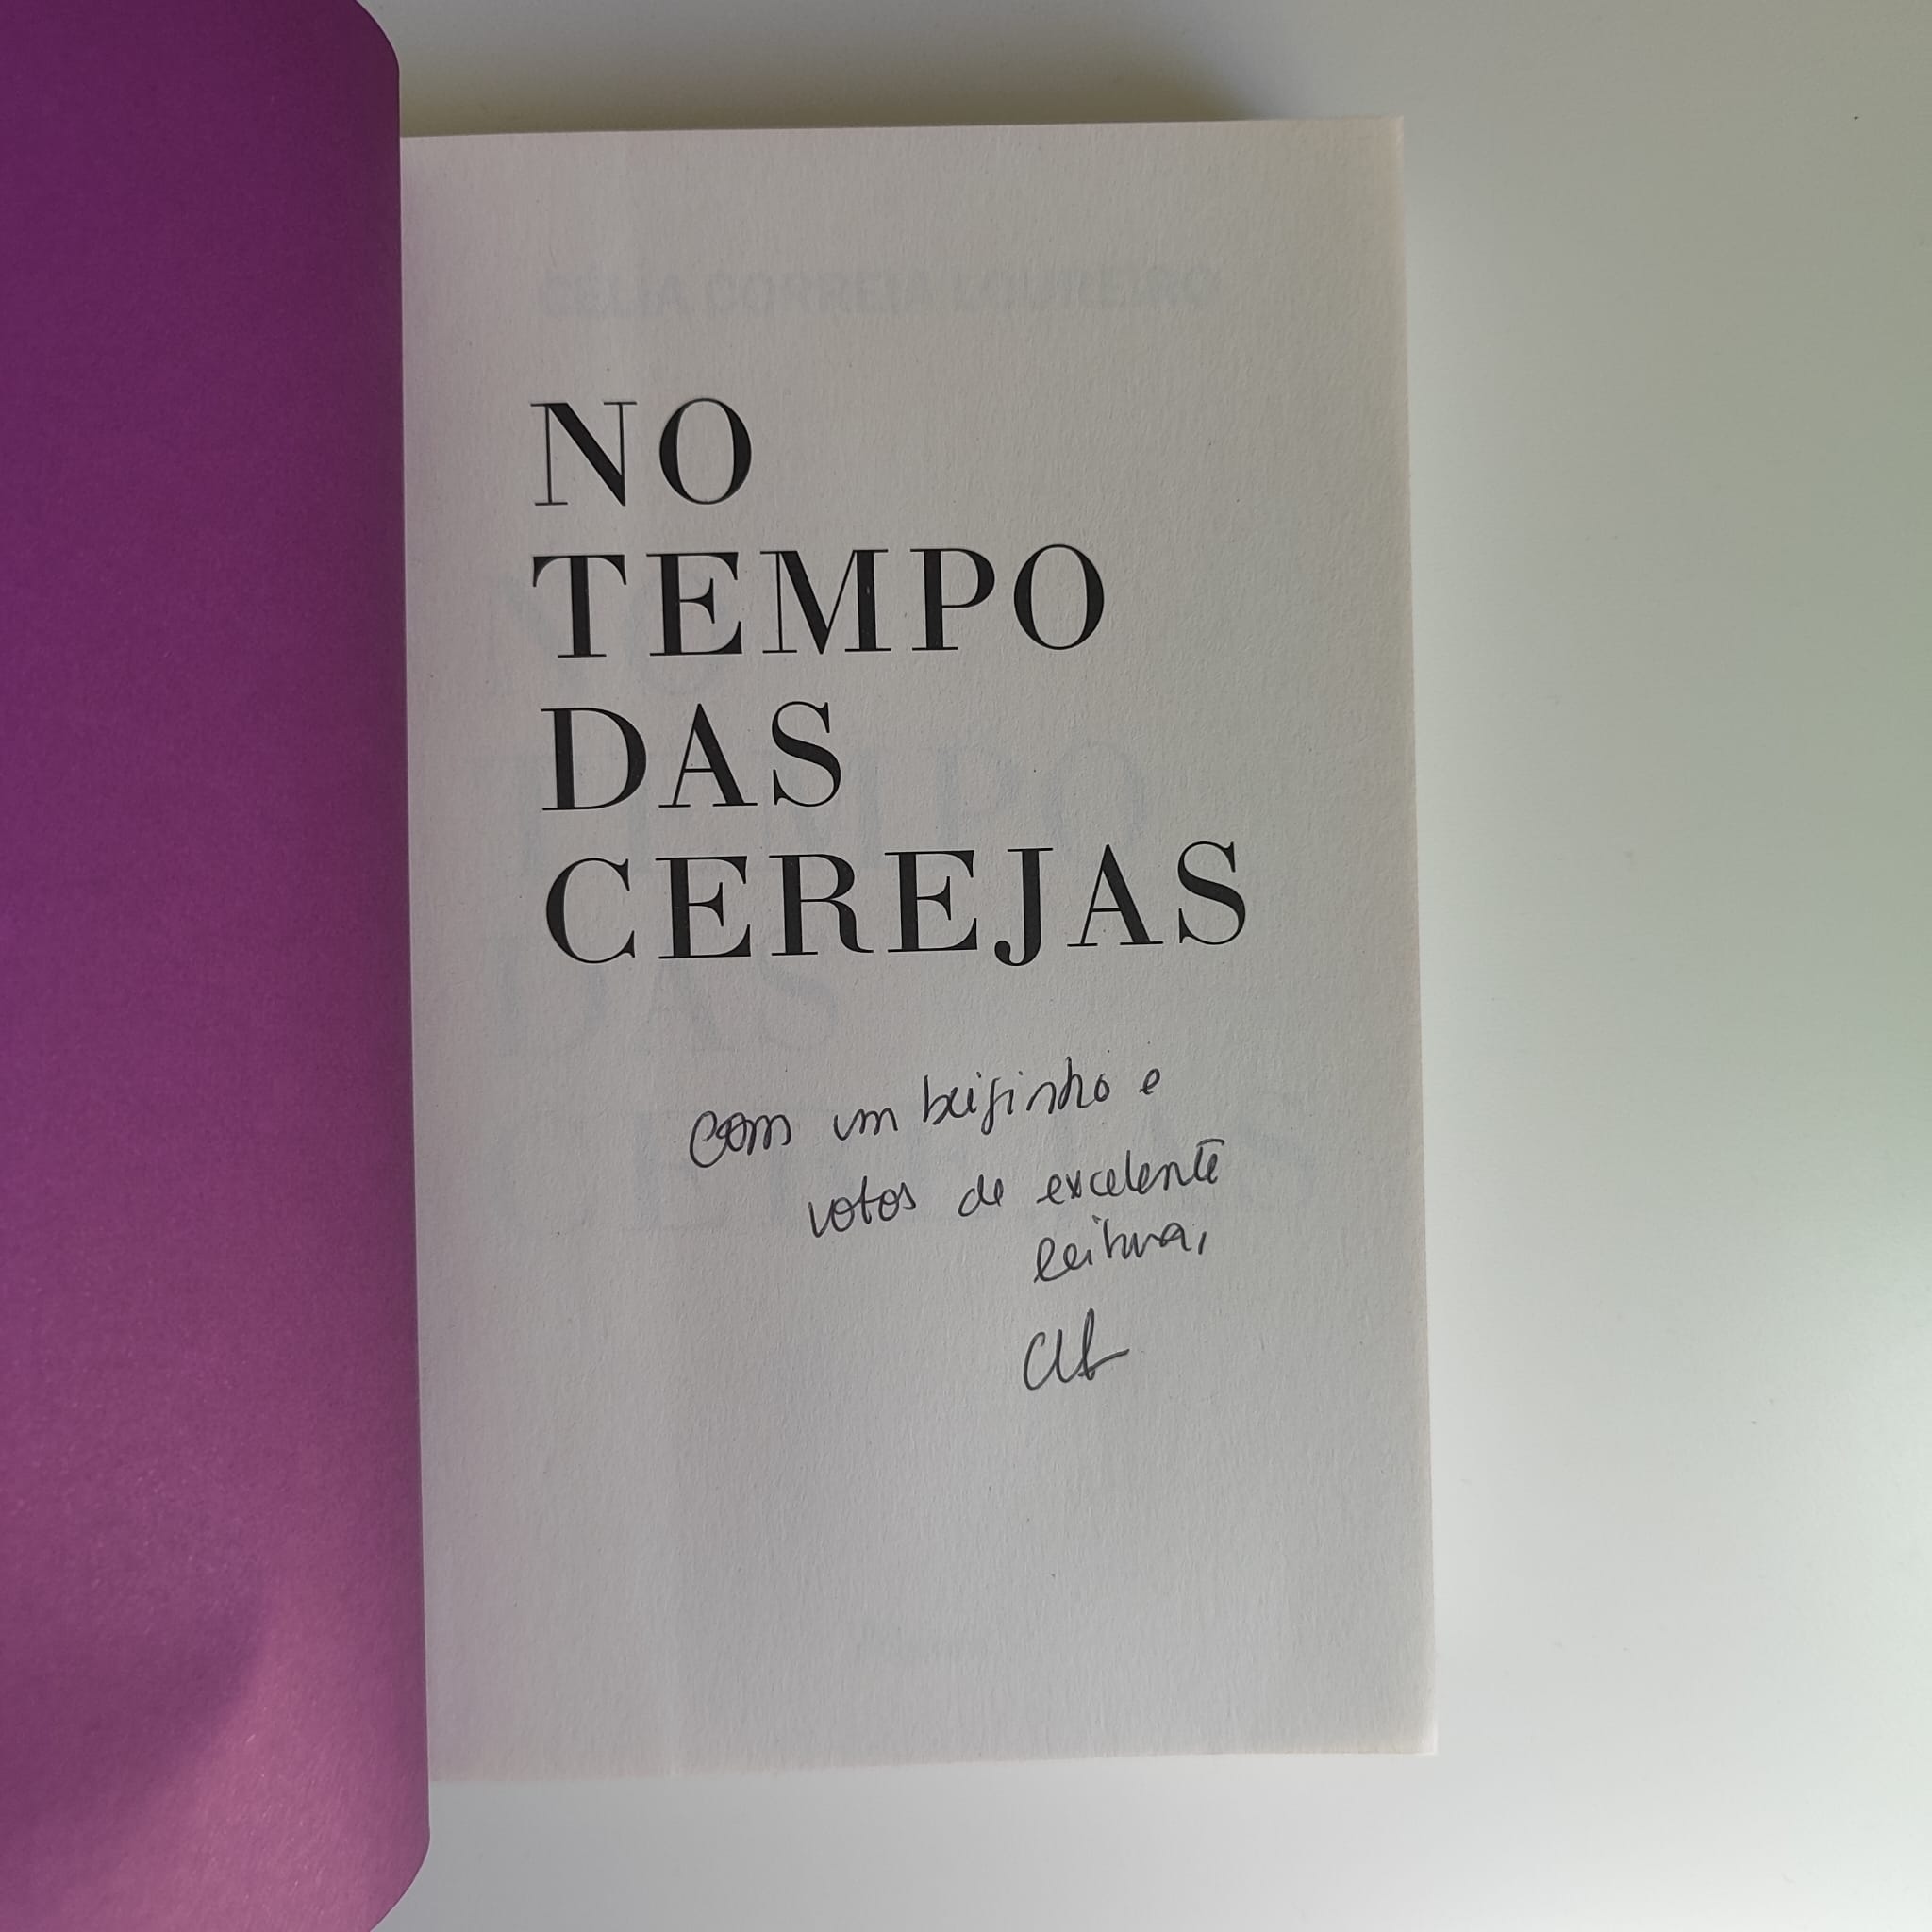 No Tempo das Cerejas, de Célia Correia Loureiro